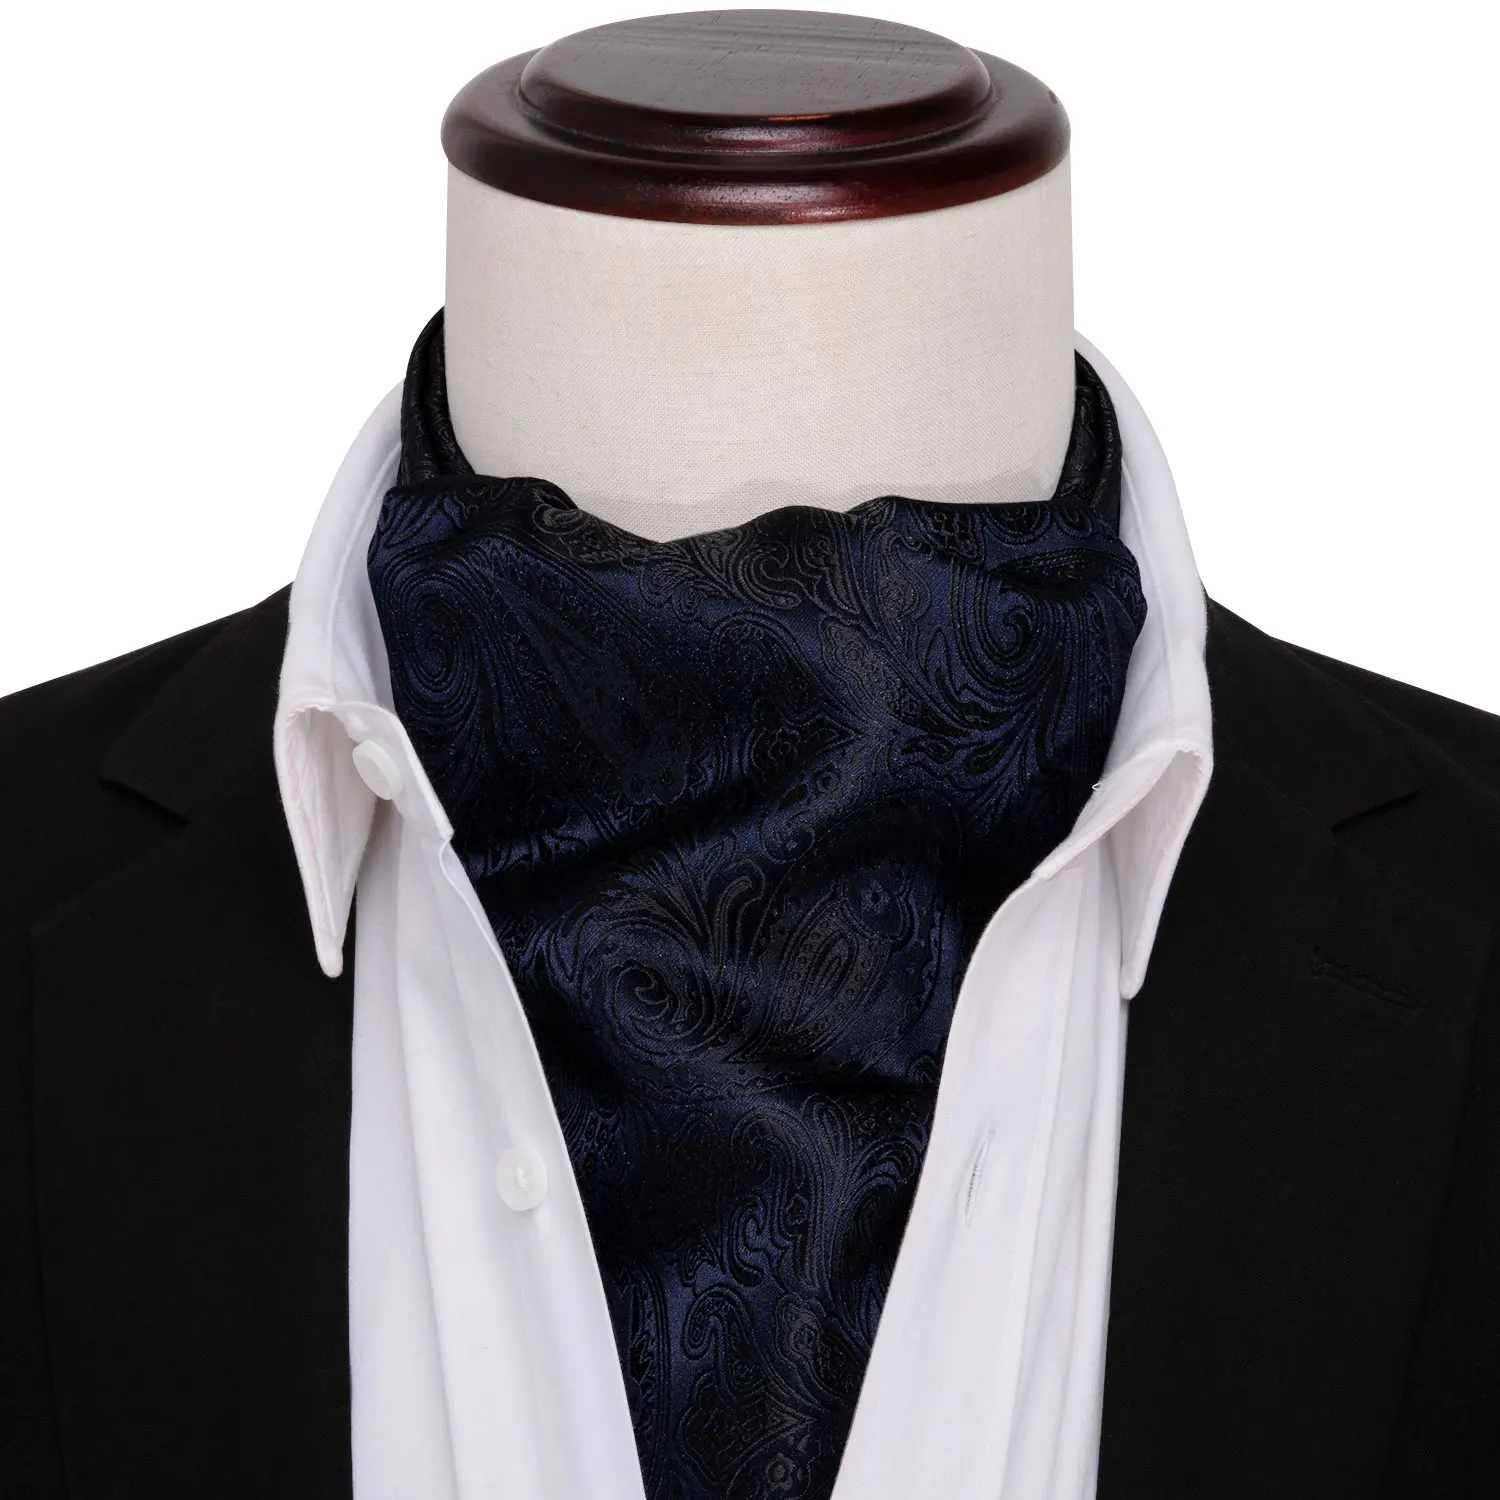 

2019 New Blue Tie for Men Ascot Paisley Cravat Silk Necktie Floral Tie Handkerchief Pocket Square Set for Suit Tuxedo Barry.Wang